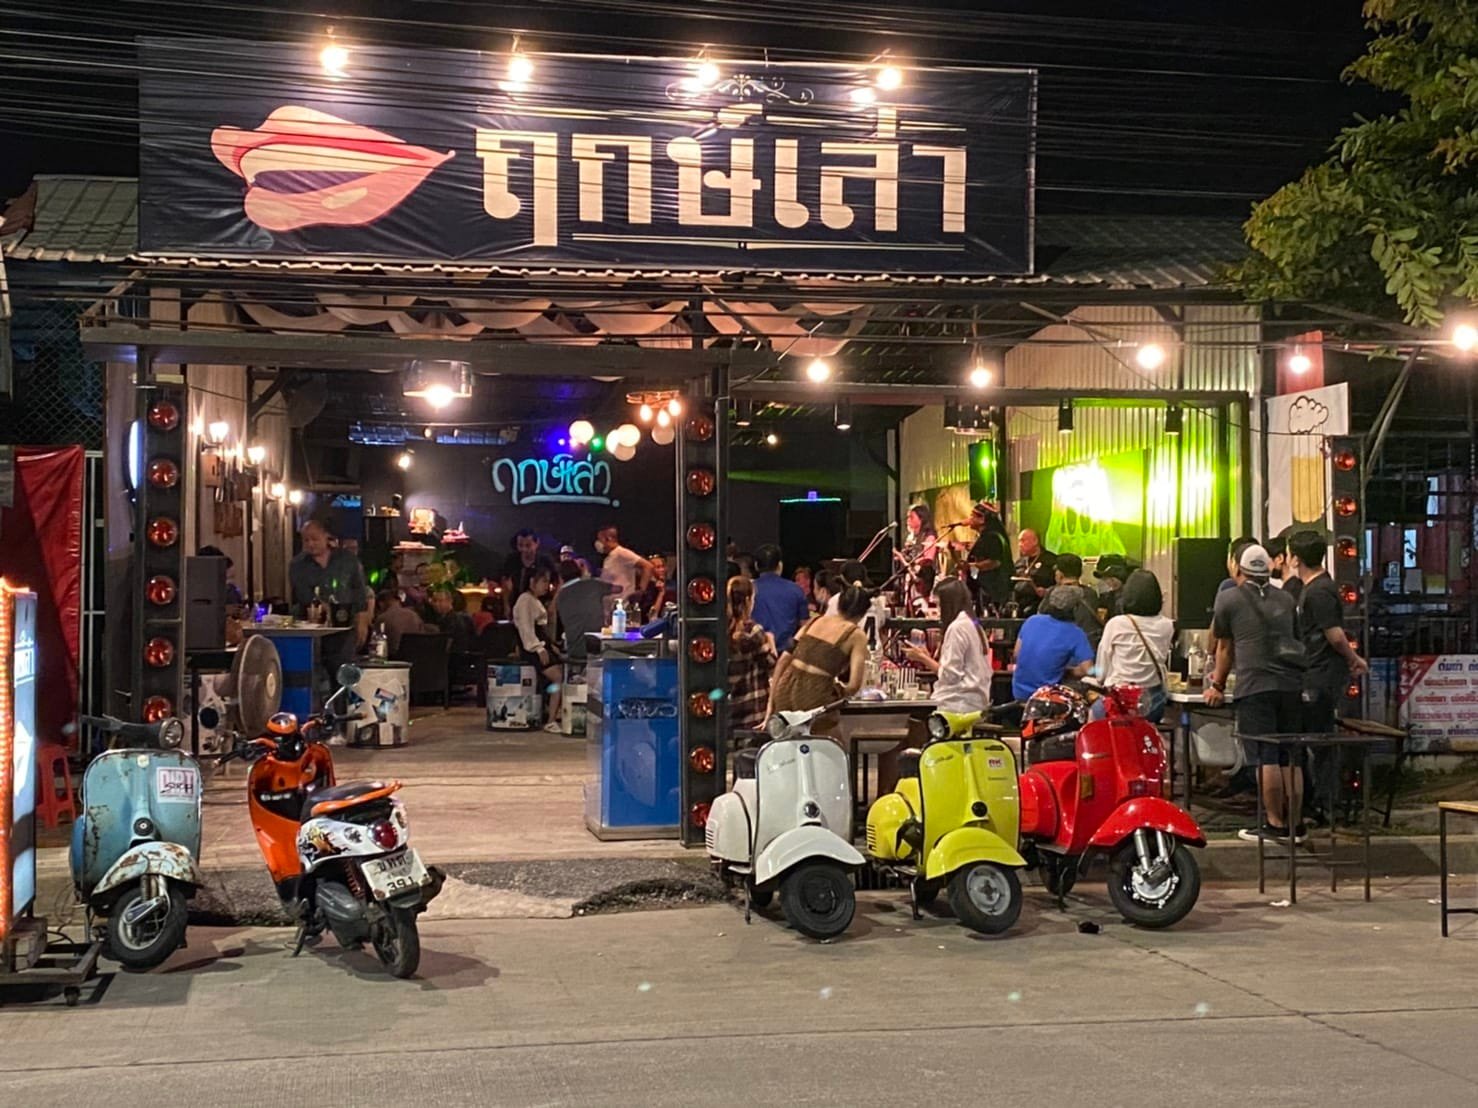 ฤกษ์เล่า Bar & Bistro (ฤกษ์เล่า Bar & Bistro) : สระบุรี (Saraburi)